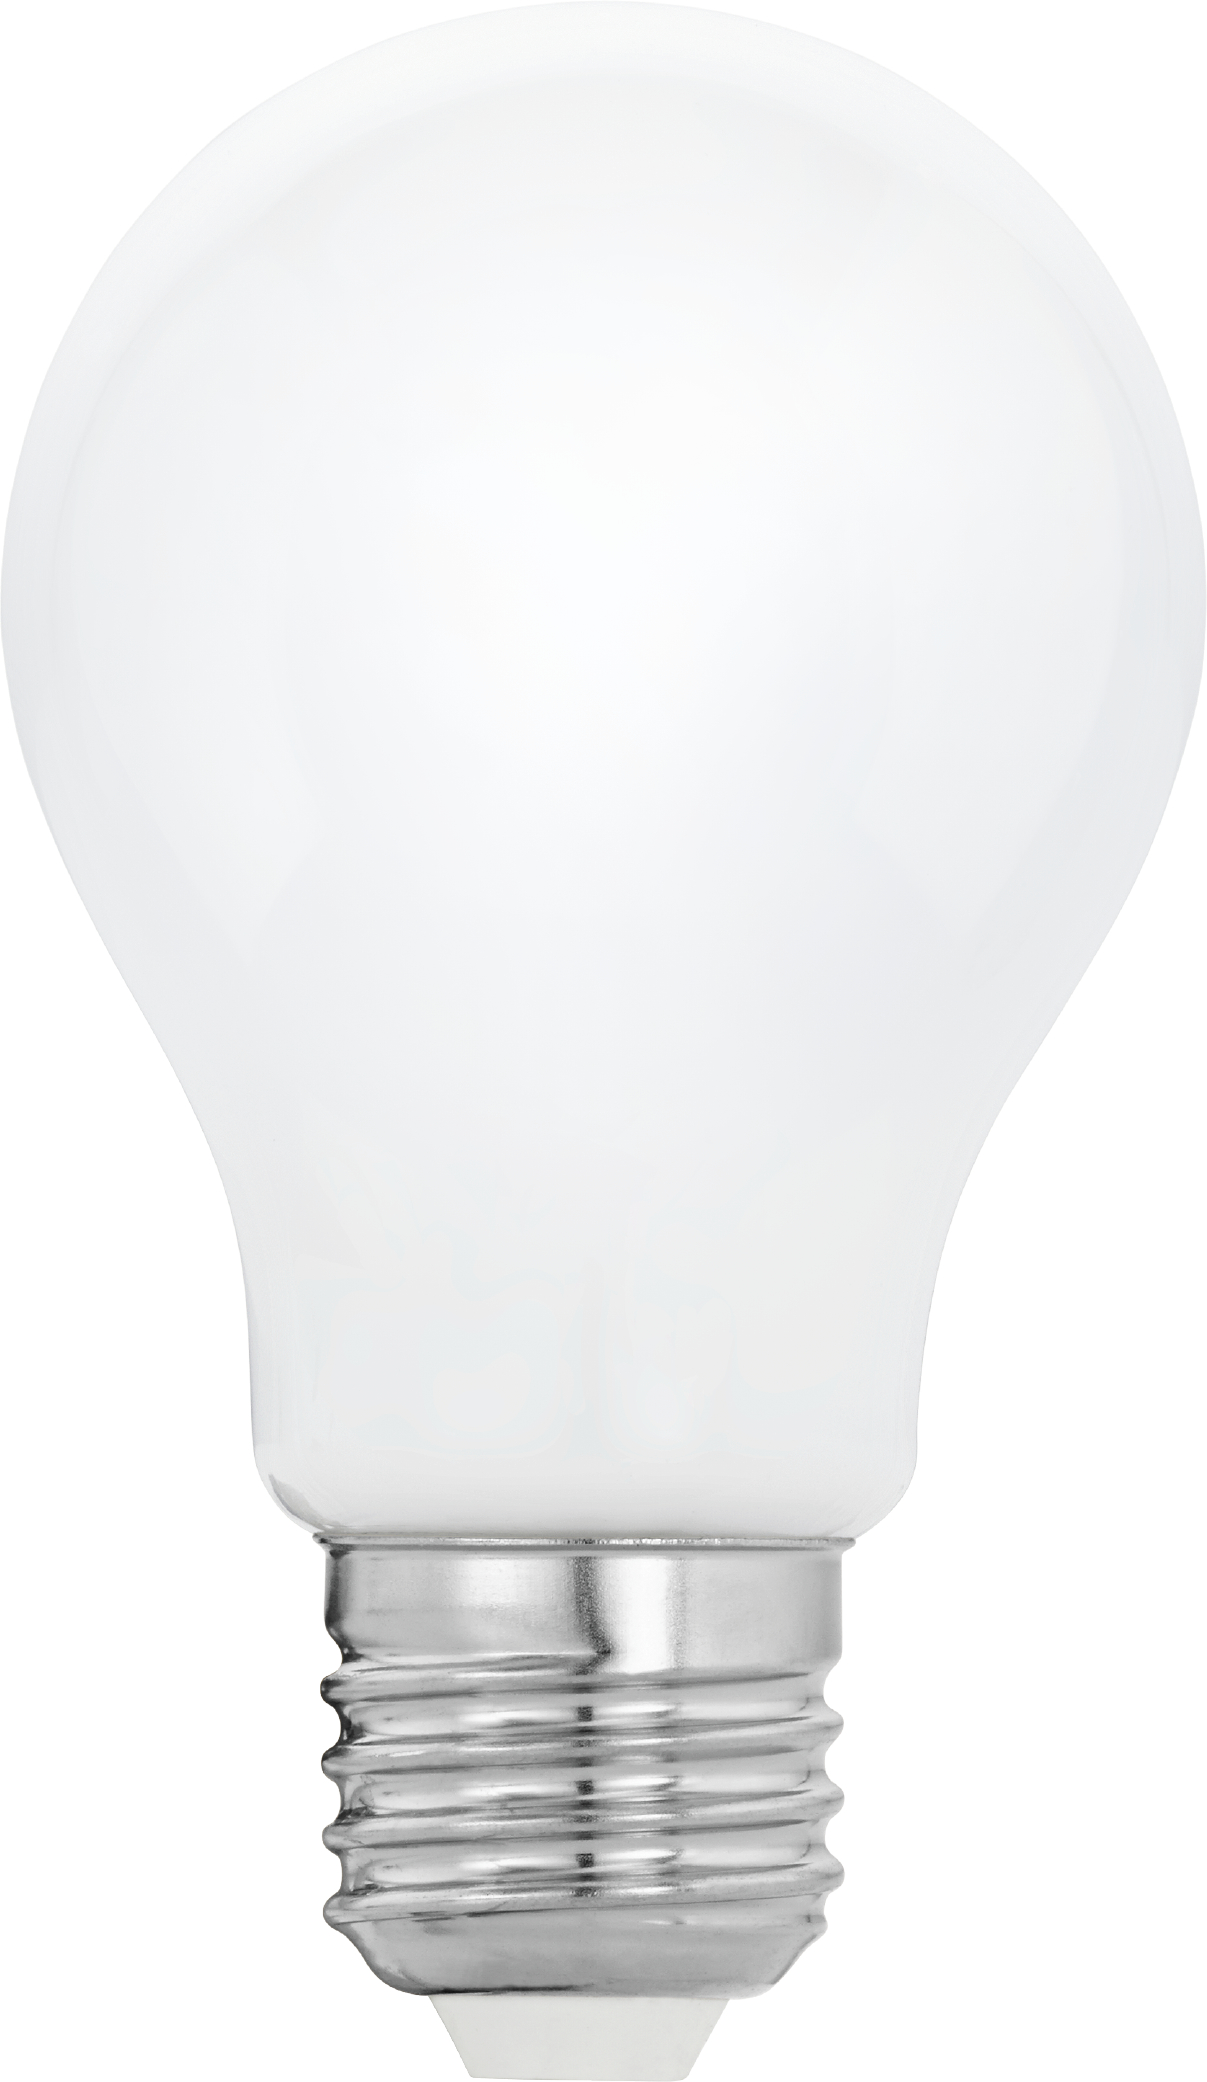 EGLO Ampoule LED E27 110048 806 lumen, dimmable, 2.5W 806 lumen, dimmable, 2.5W